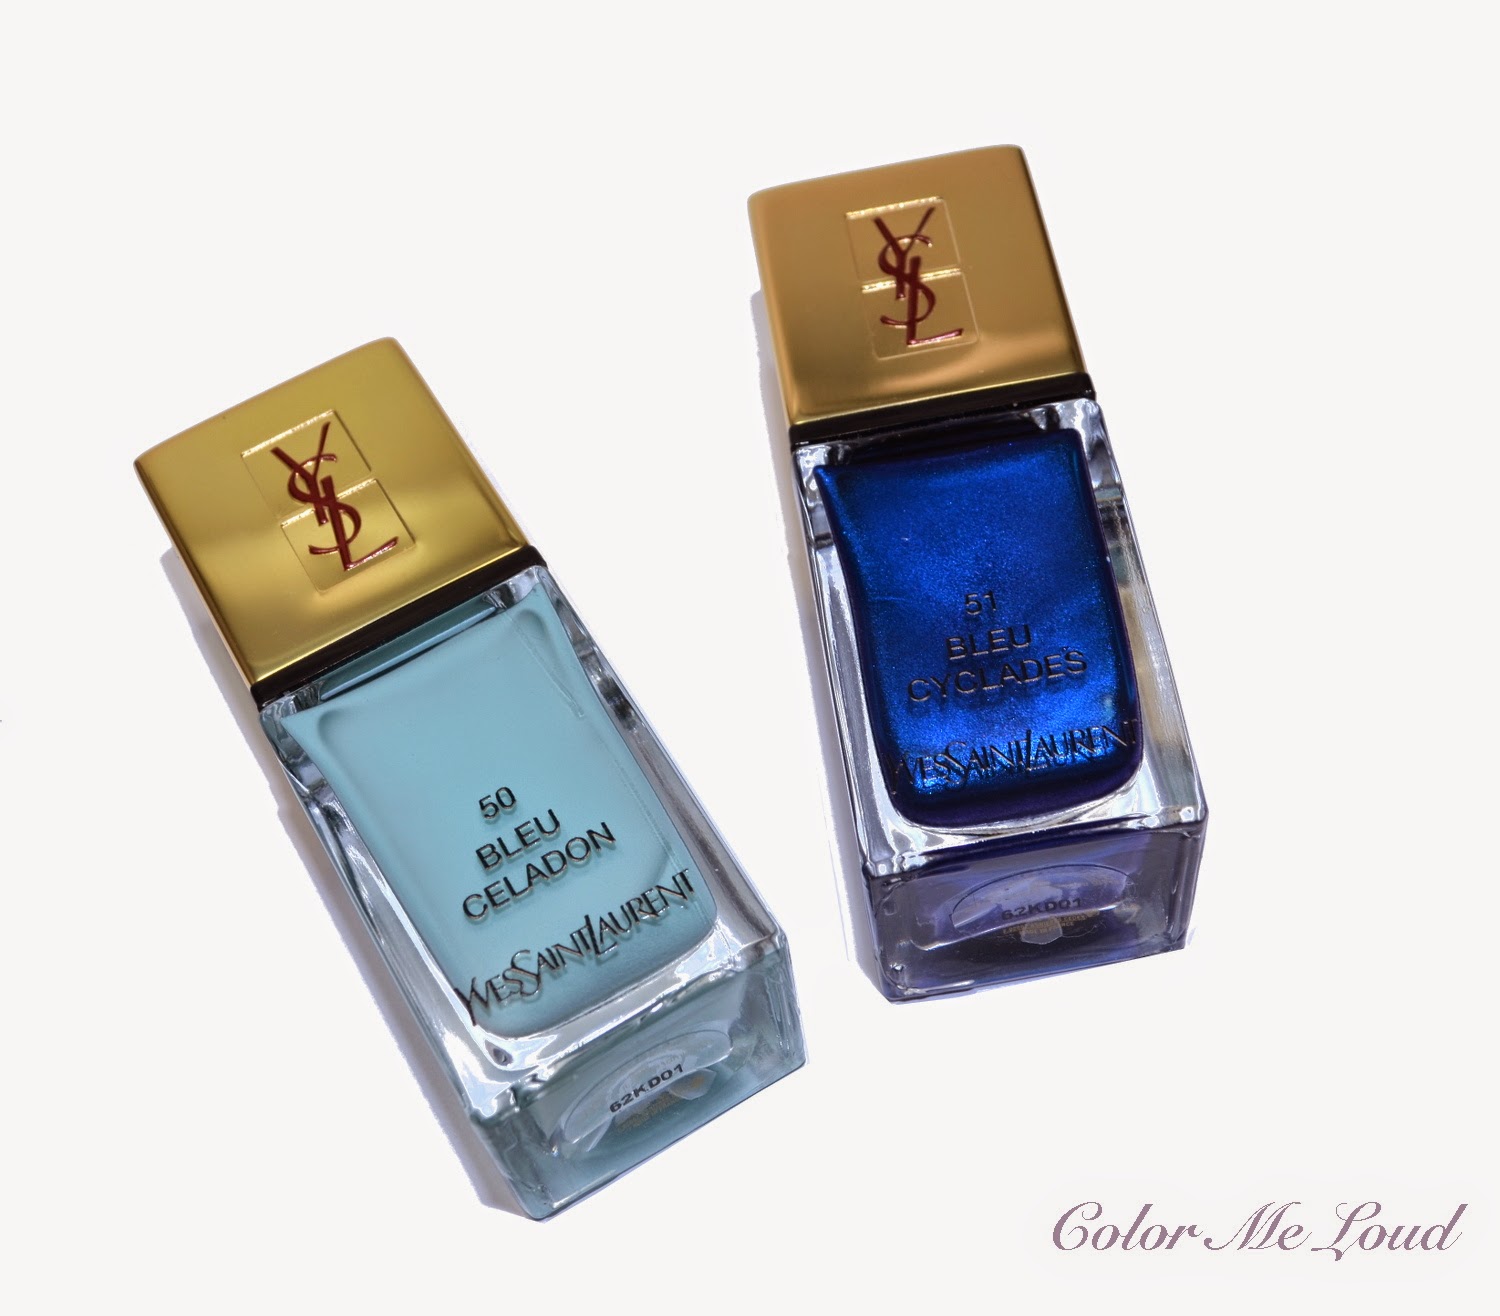 Yves Saint Laurent La Laque Couture #50 Bleu Celadon, #51 Bleu Cyclades for Bleus Lumiere Summer 2014 Collection, Reviews, Swatches & Comparison